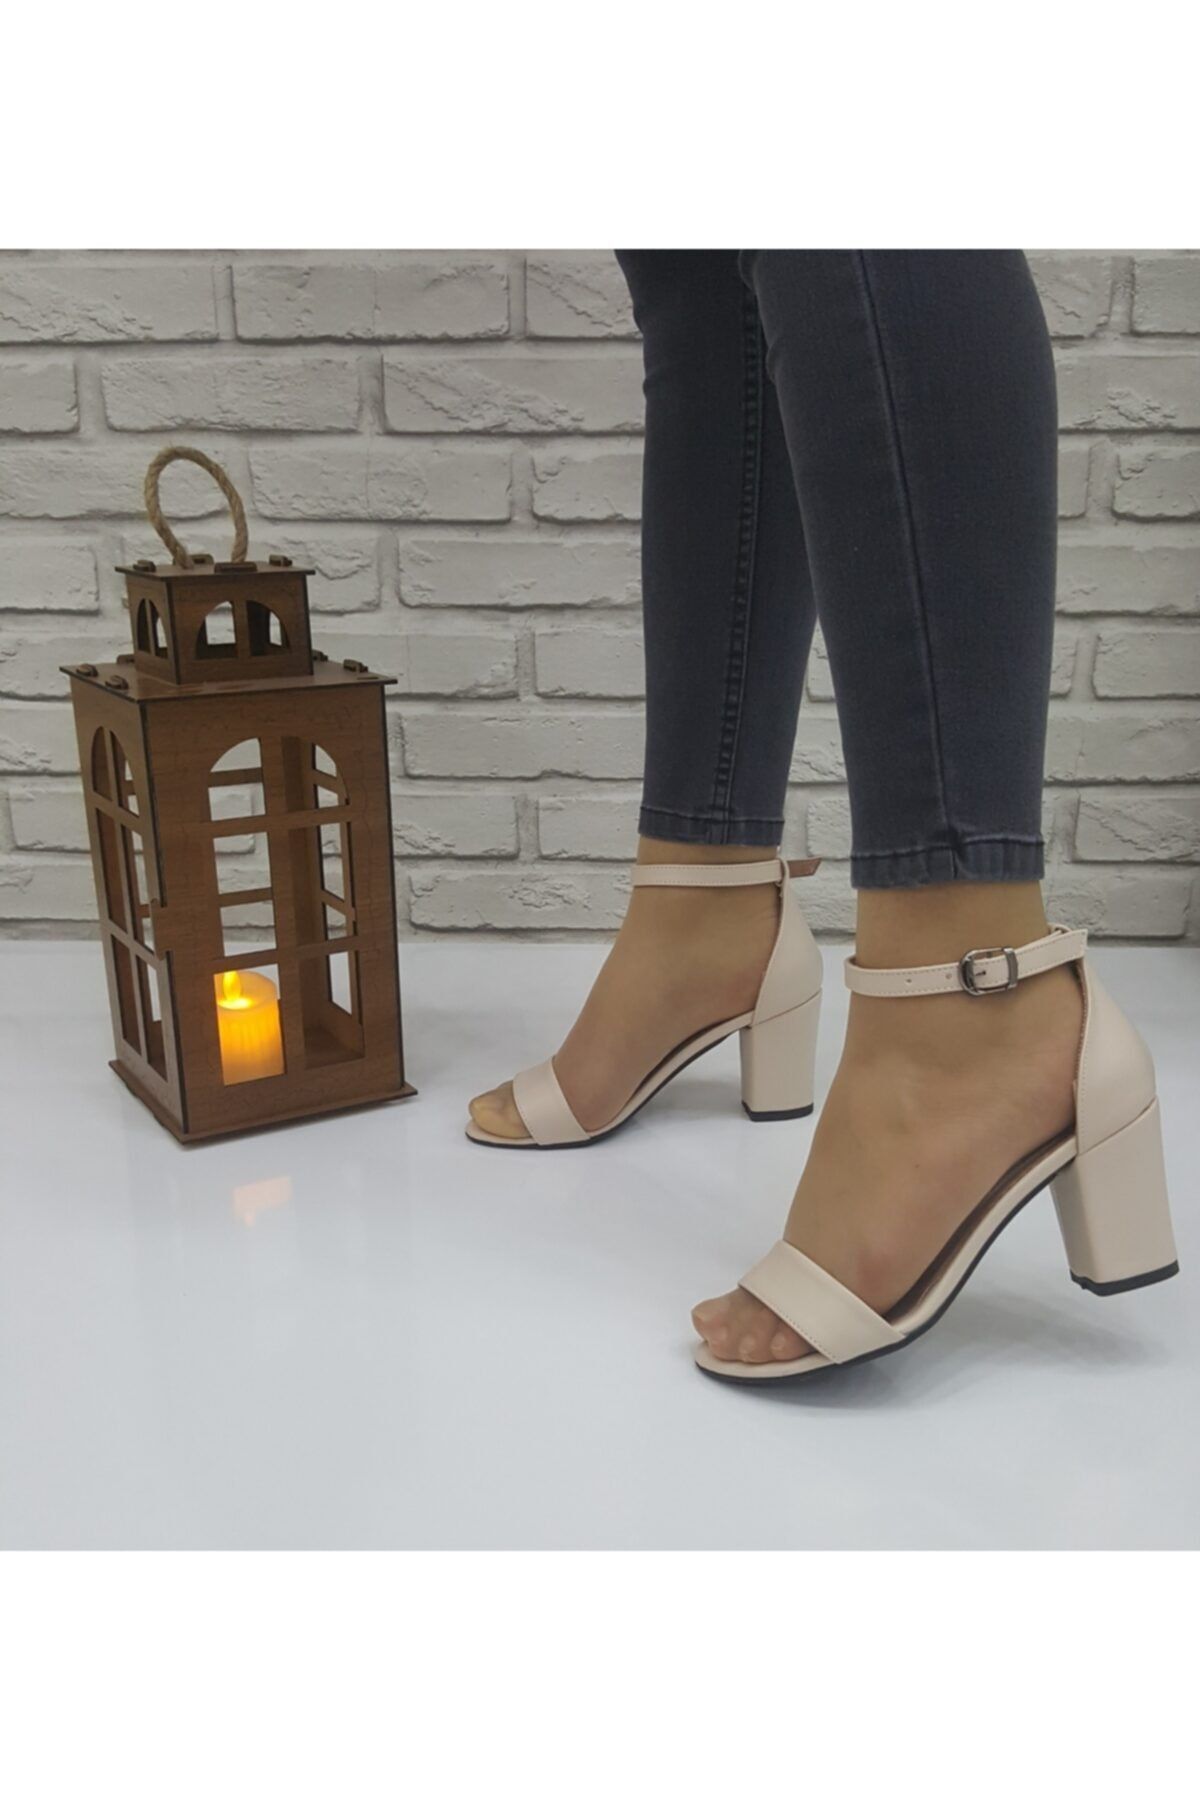 ZERDALİFE Kadın Krem Deri Bilek Bağlamalı Topuklu Ayakkabı